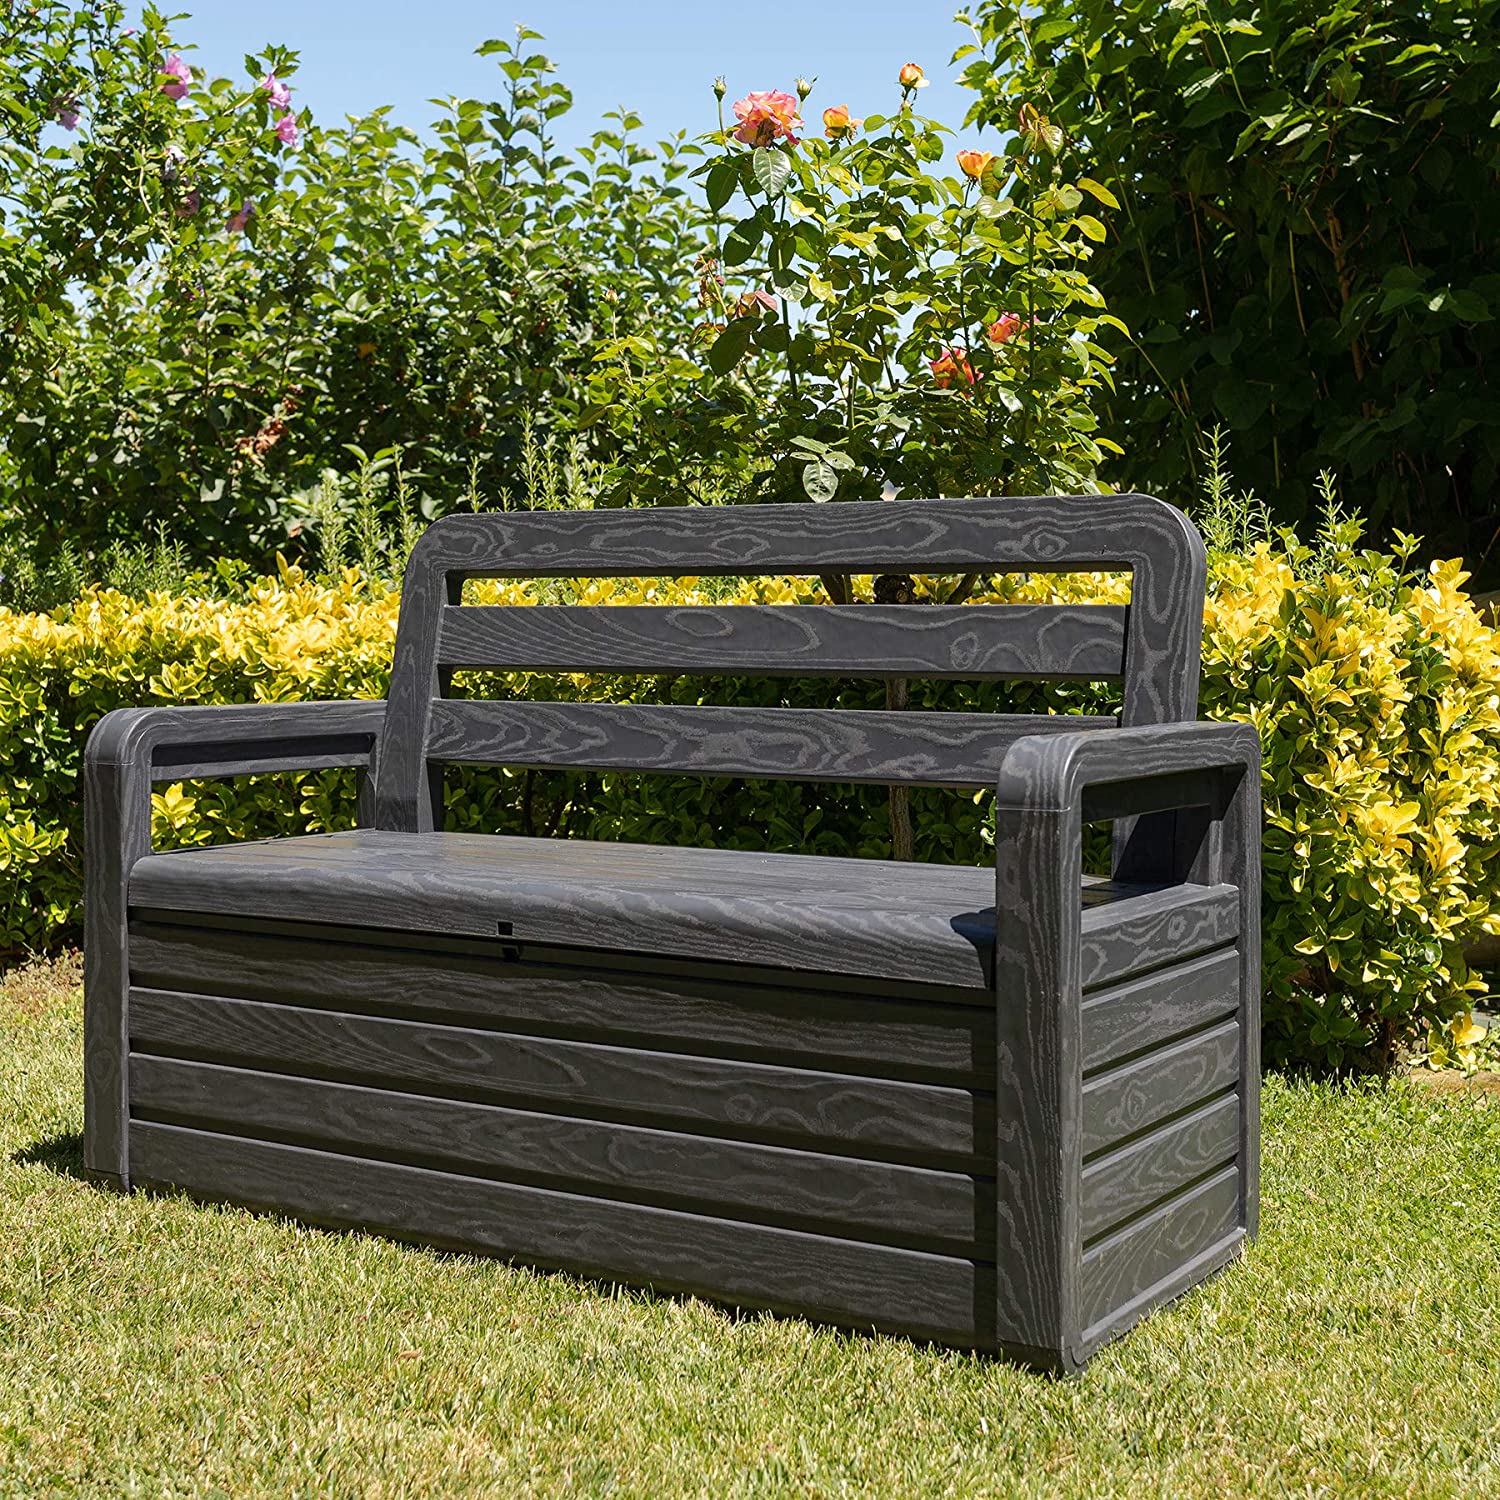 Пластиковая скамья с ящиком Toomax Bench Seat, антрацит